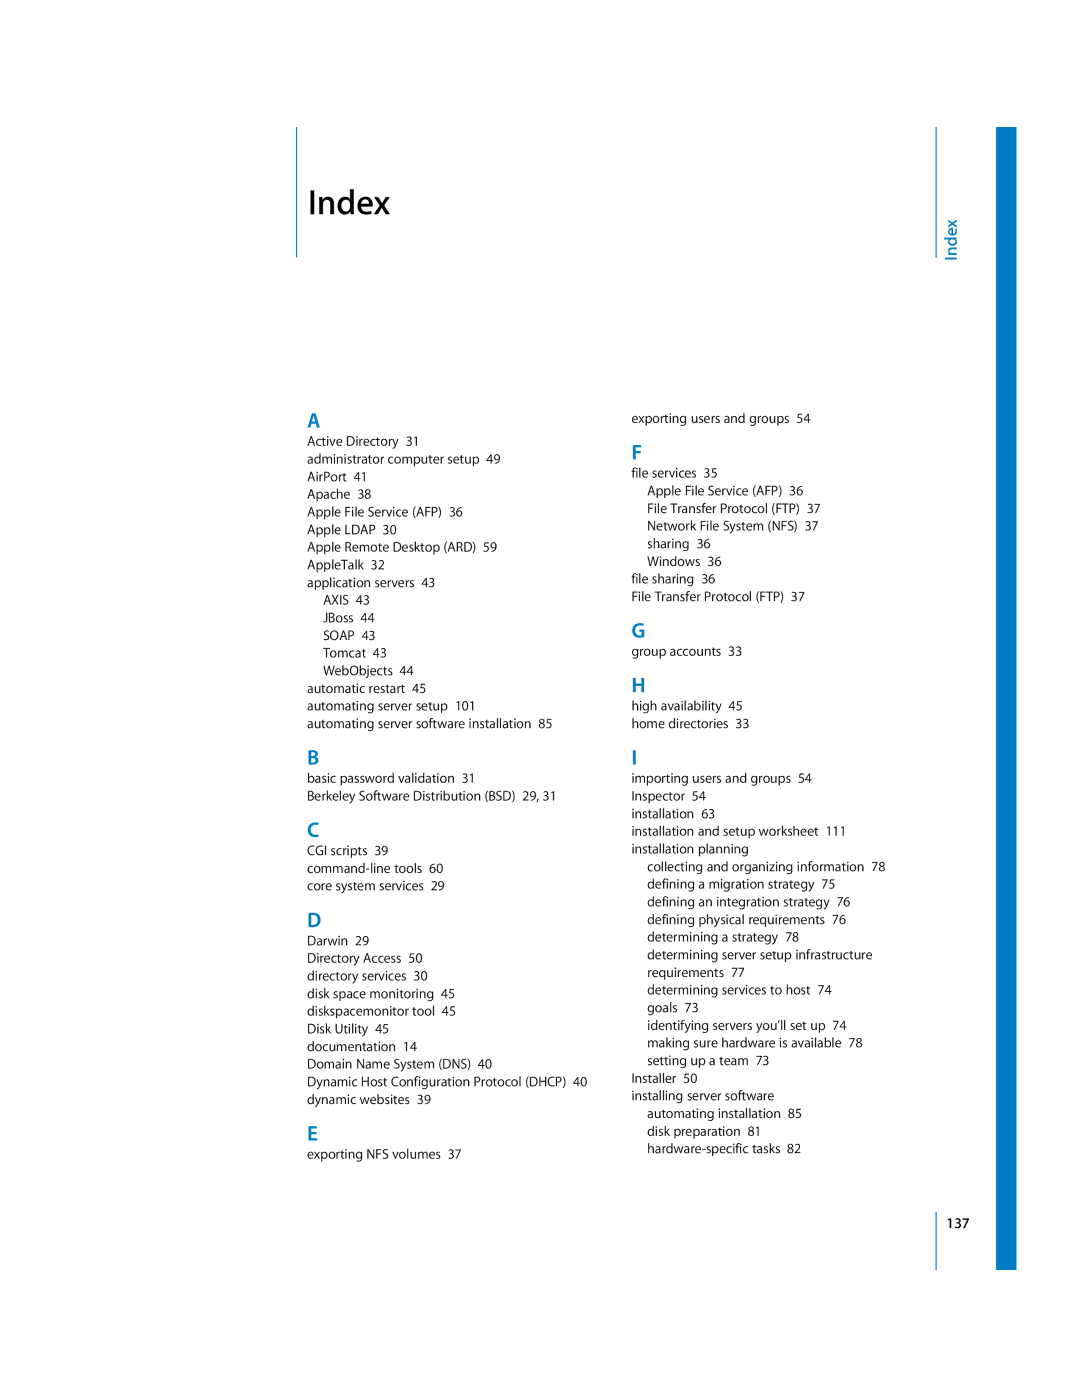 Apple 10.3 manual Index 